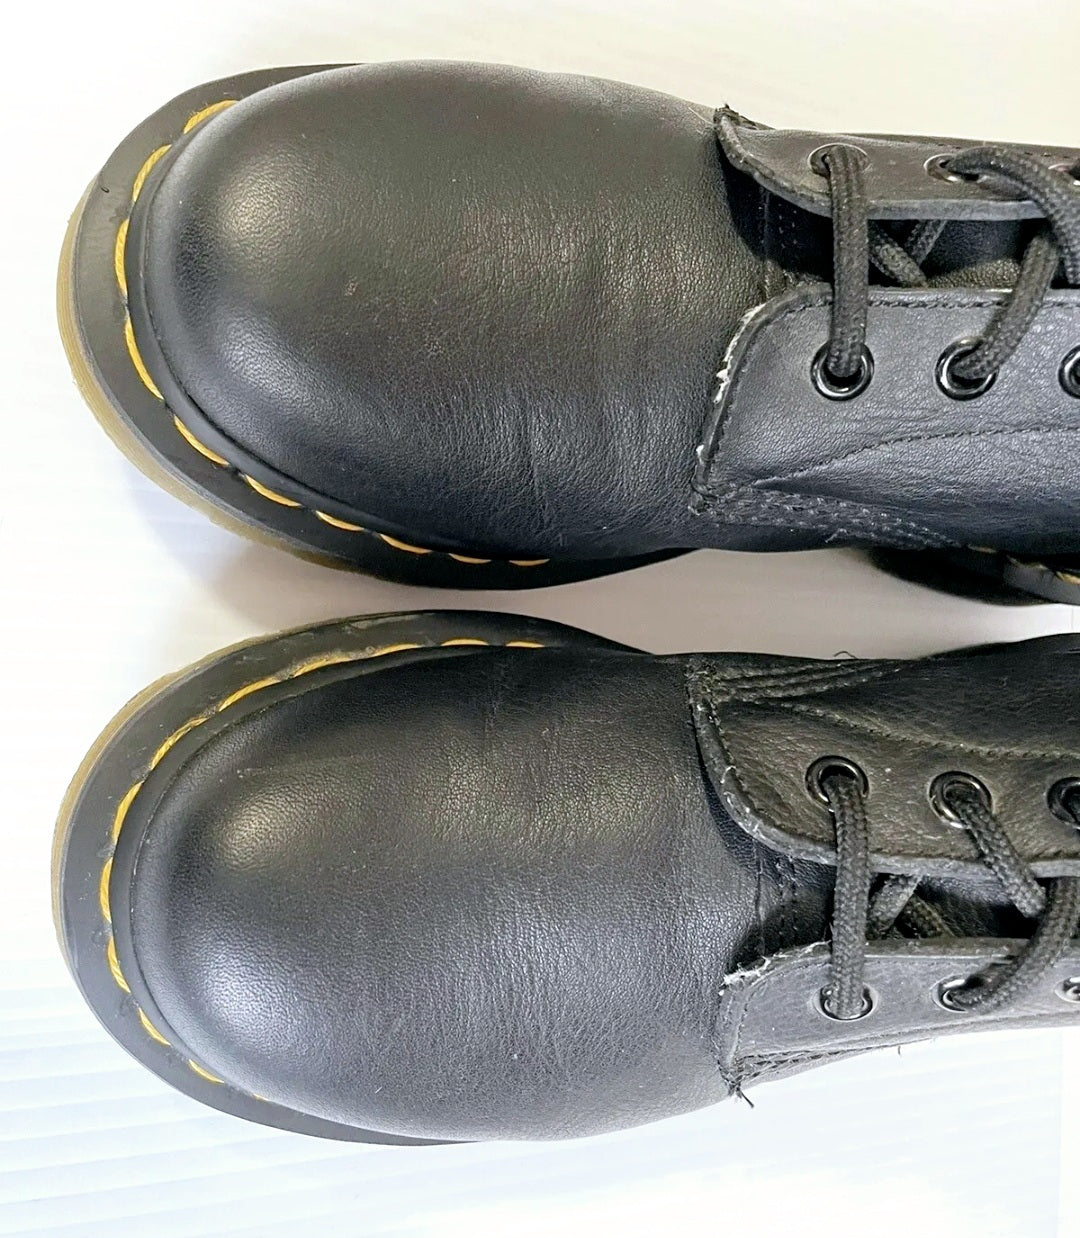 Men's Dr. Martens Black Leather Lace-up Doc Combat Boots (sz 10)